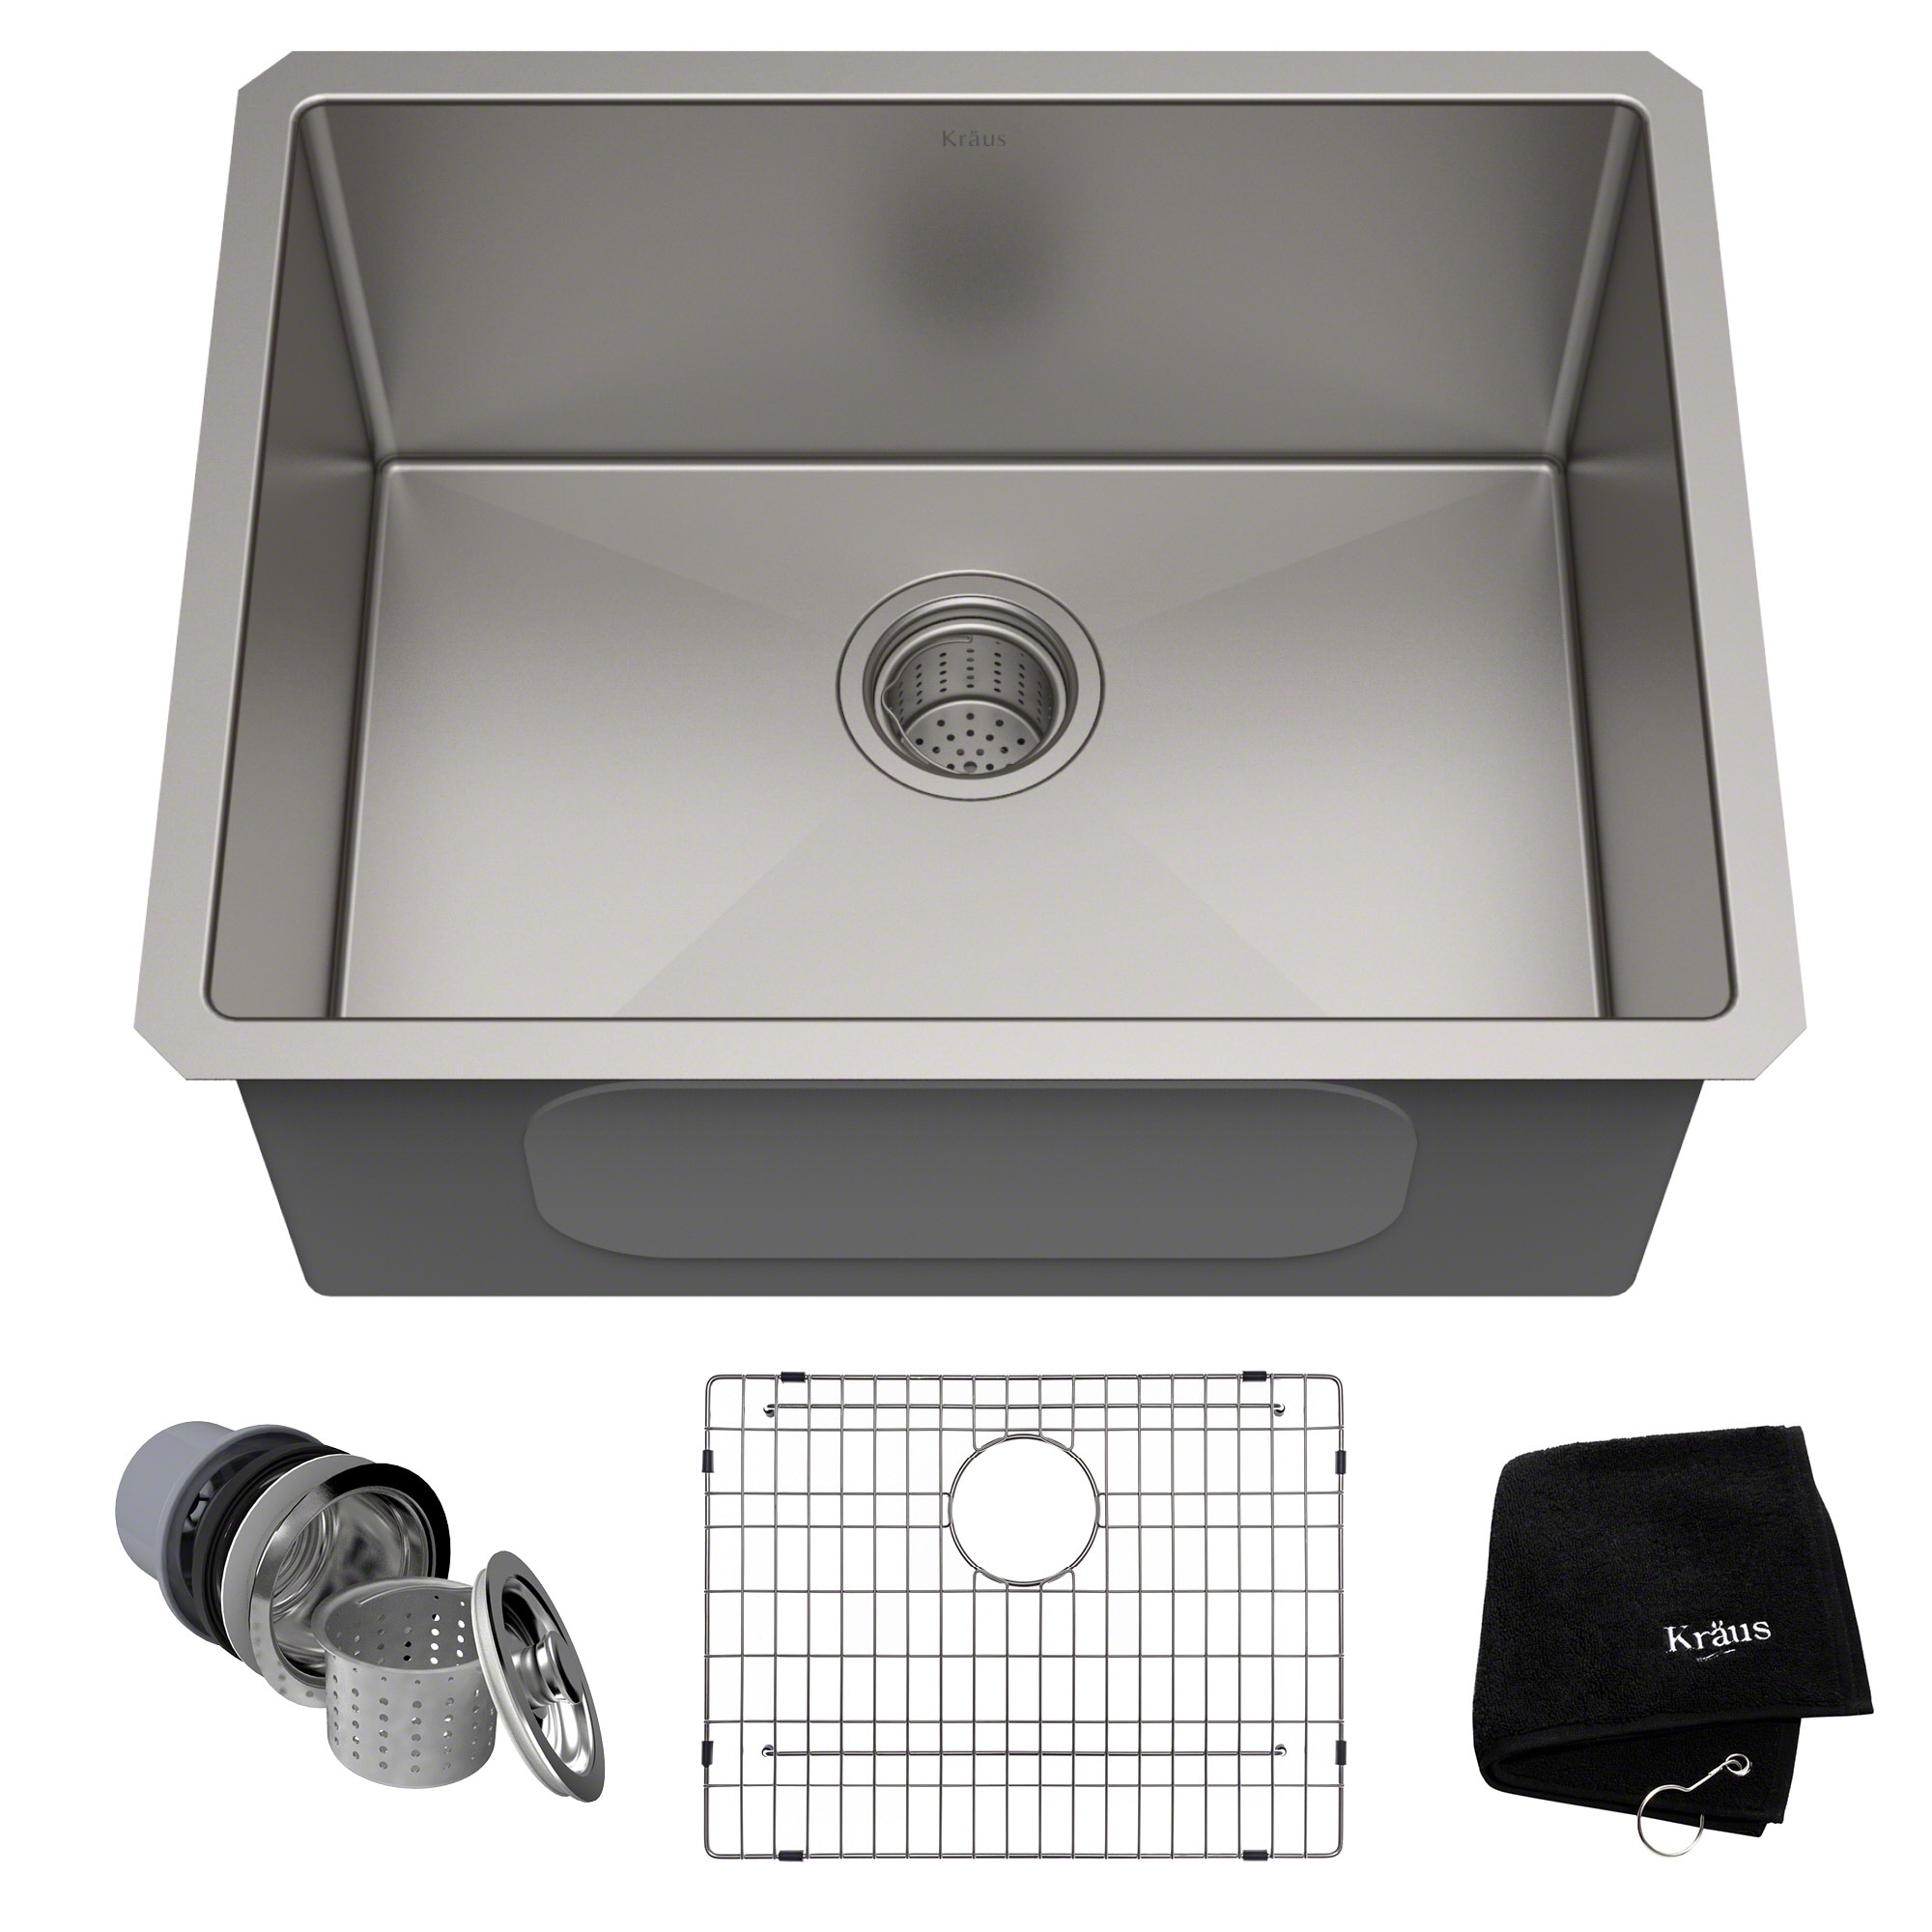 KRAUS Standart PRO Stainless Steel 23 inch Undermount Kitchen Sink On  Sale Bed Bath  Beyond 3730988